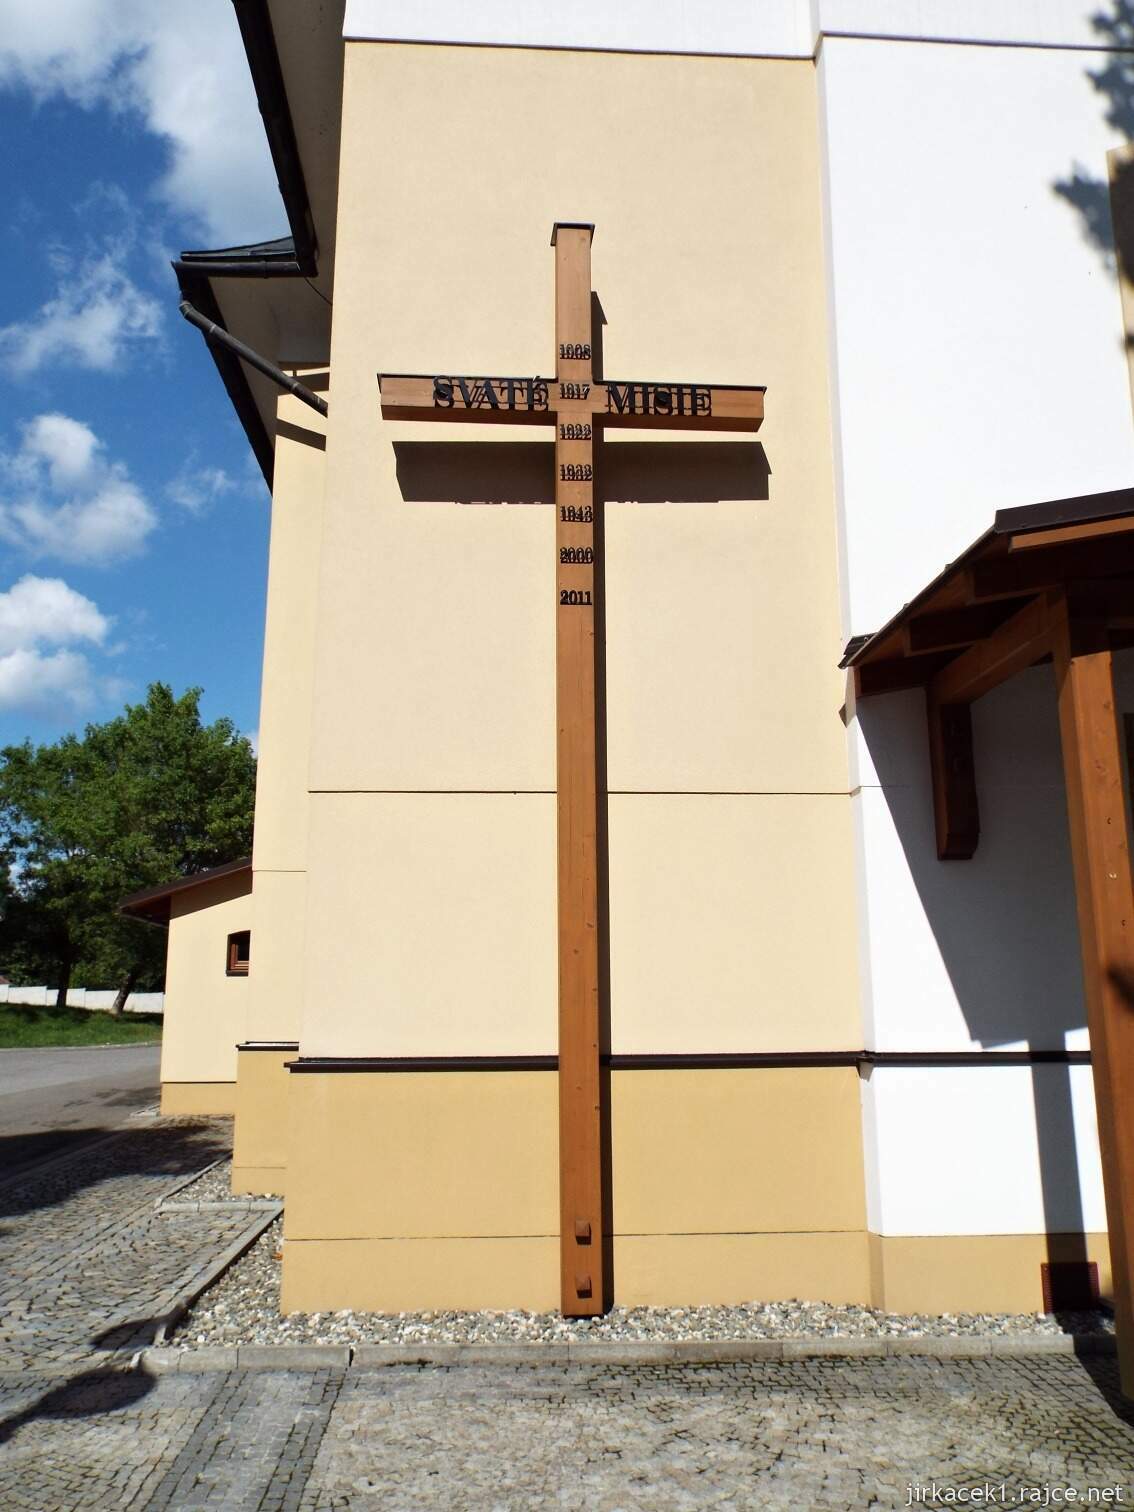 017 - Nový Hrozenkov - kostel sv. Jana Křtitele 05 - misijní kříž u vchodu